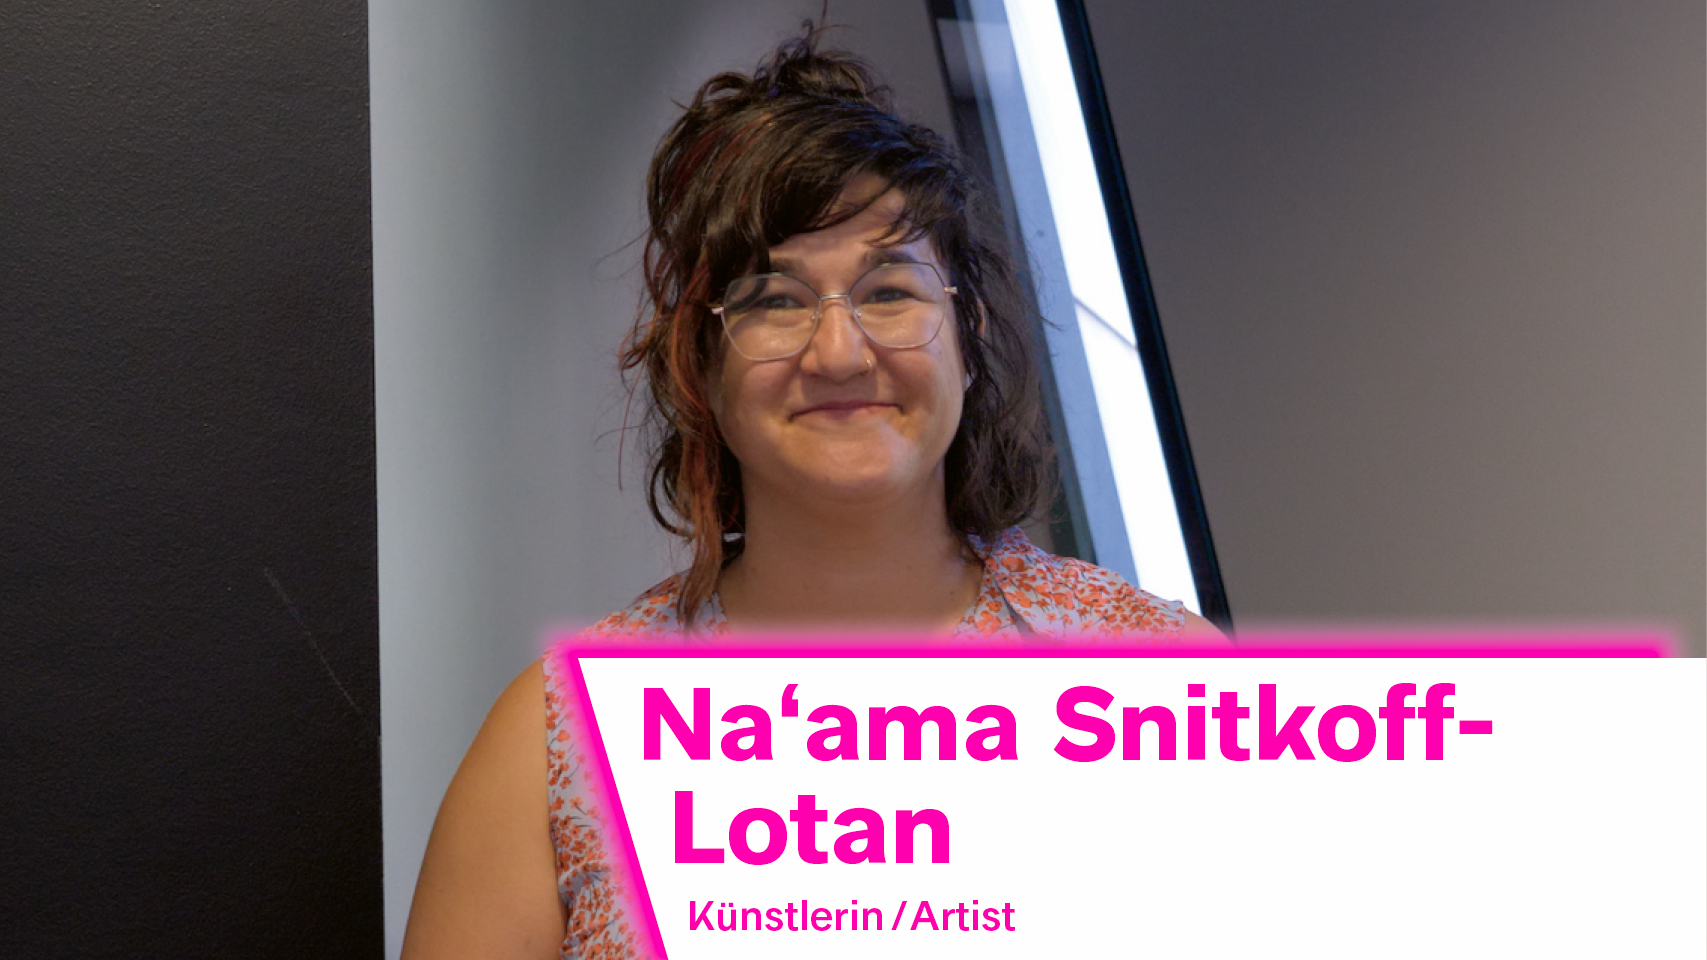 Das Bild zeigt die israelische Künstlerin Na'ama Snitkoff-Lotan. Sie trägt eine bunte Bluse, ihr braunes Haar ist nach hinten gesteckt. Sie trägt eine Brille.